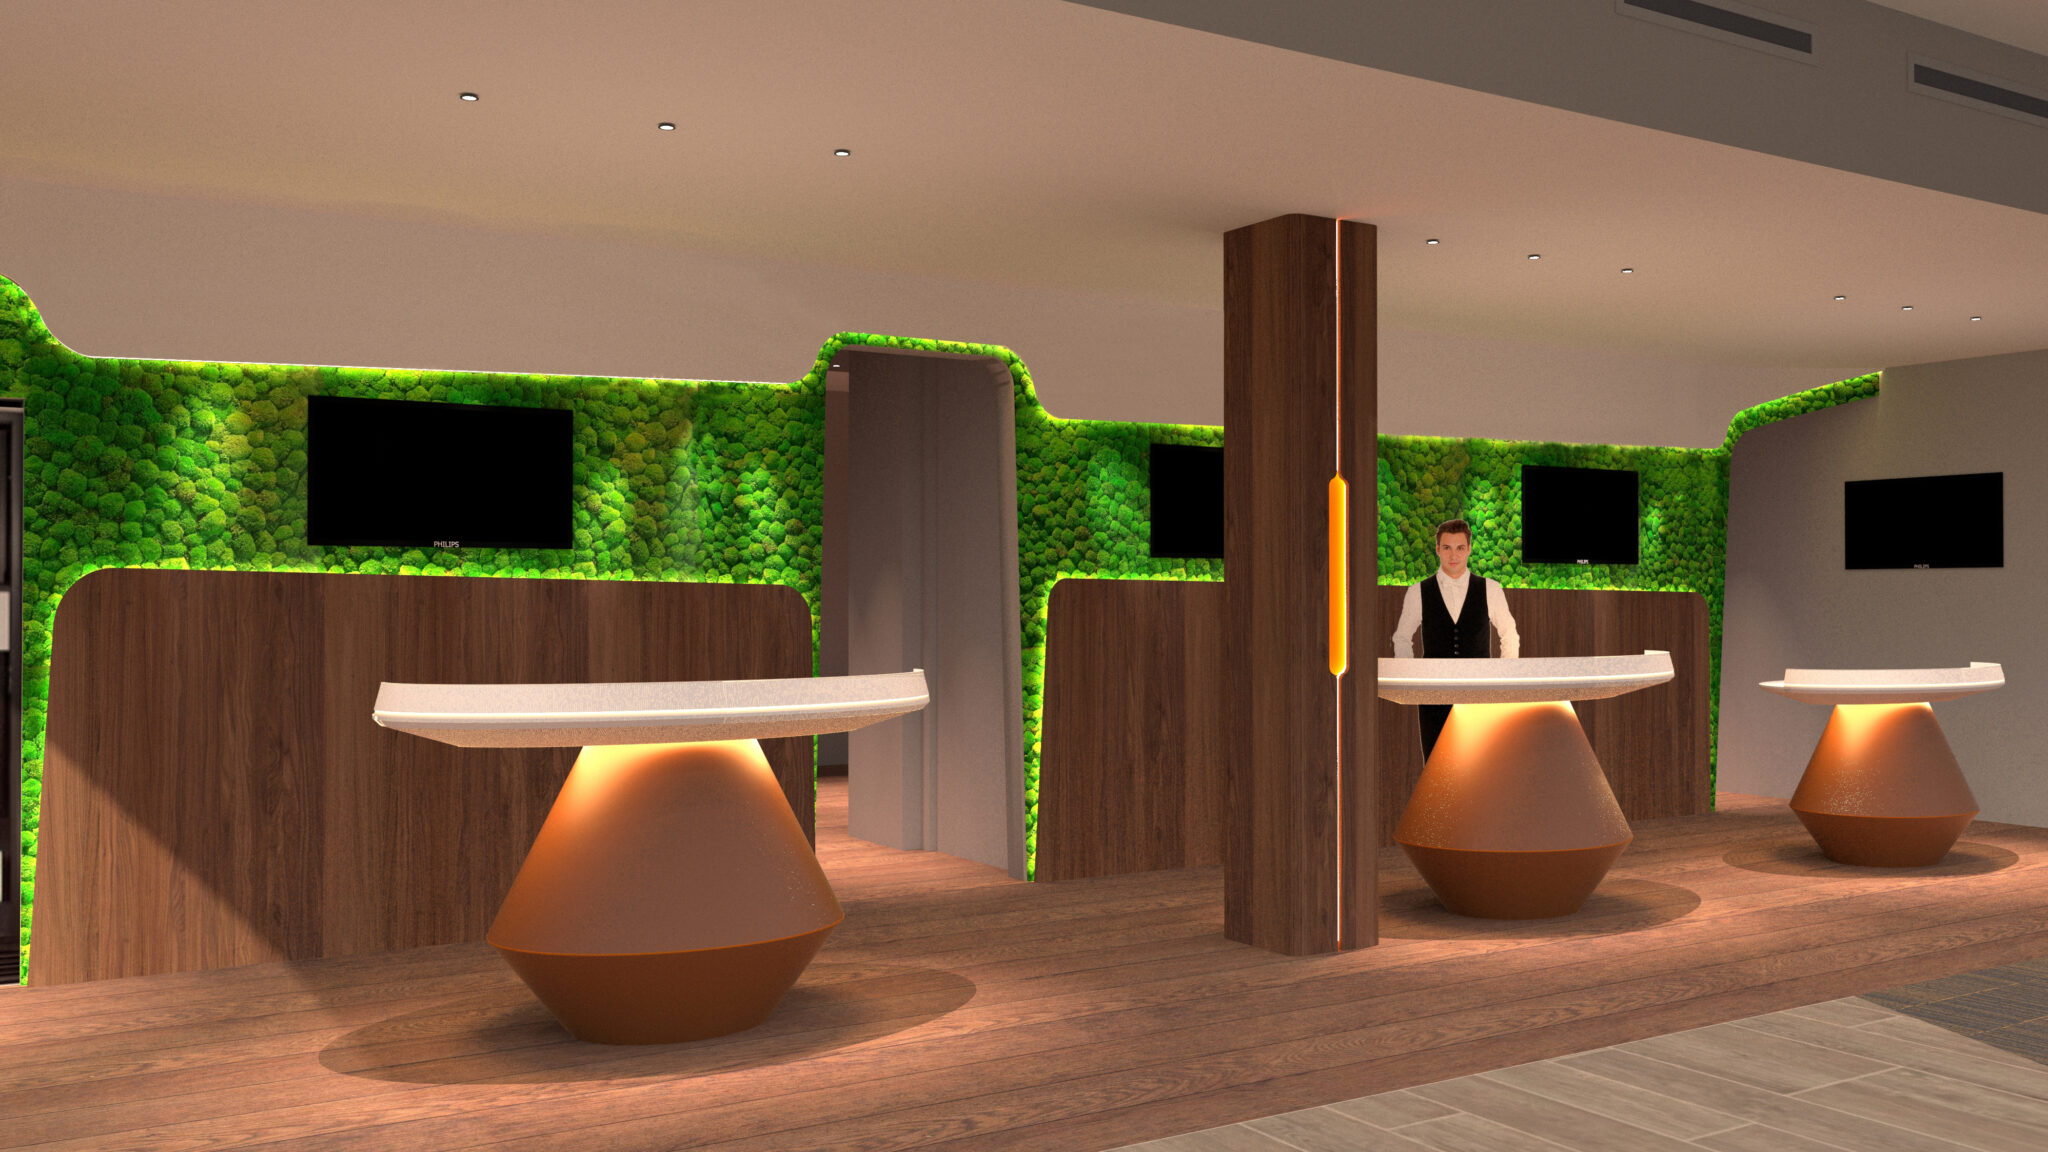 Lobby réception mur végétal desk accueil panneau décor bois noyer rampe LED